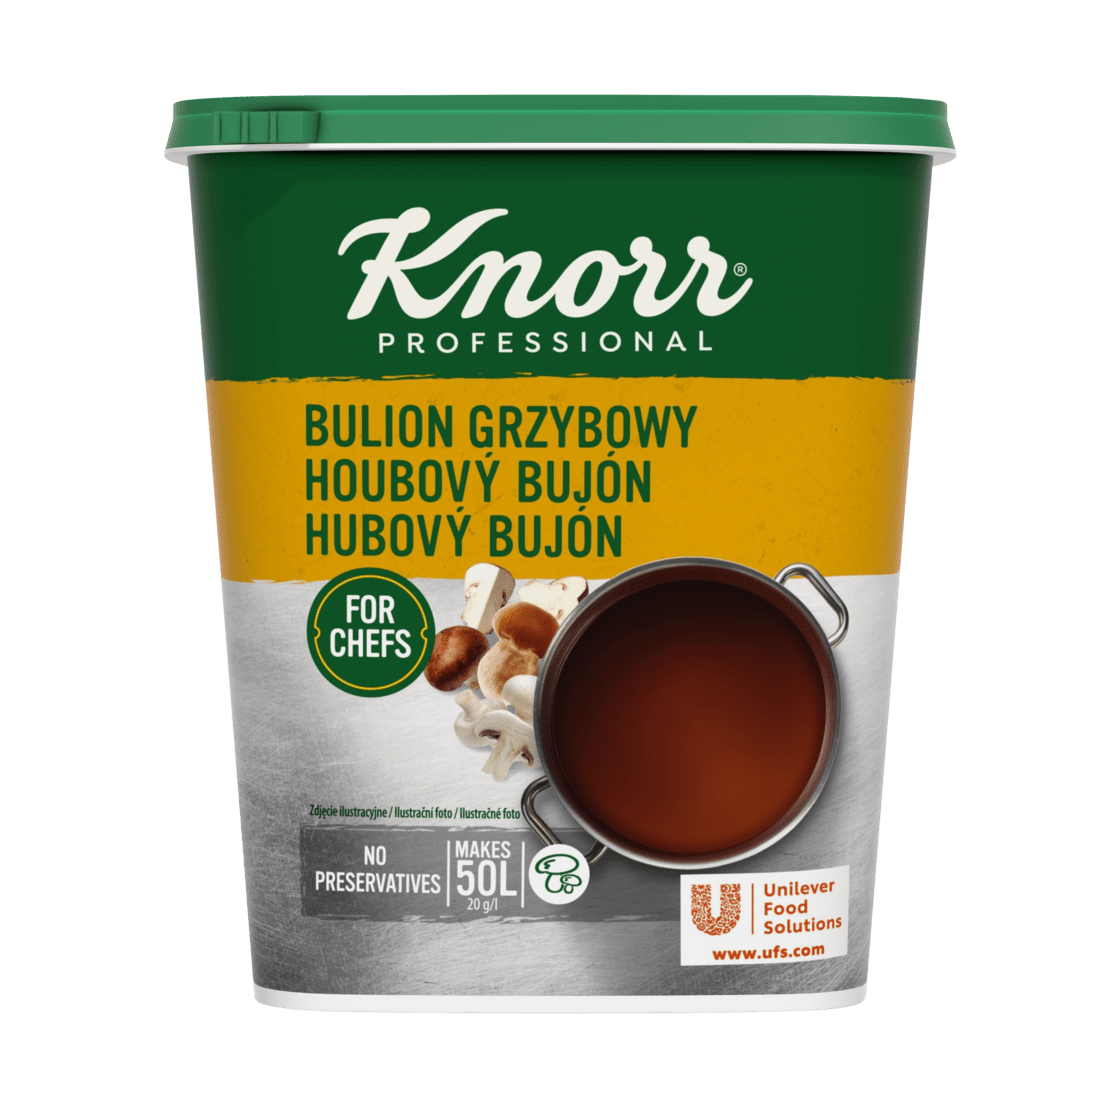 KNORR Professional Hubový bujón 1 kg